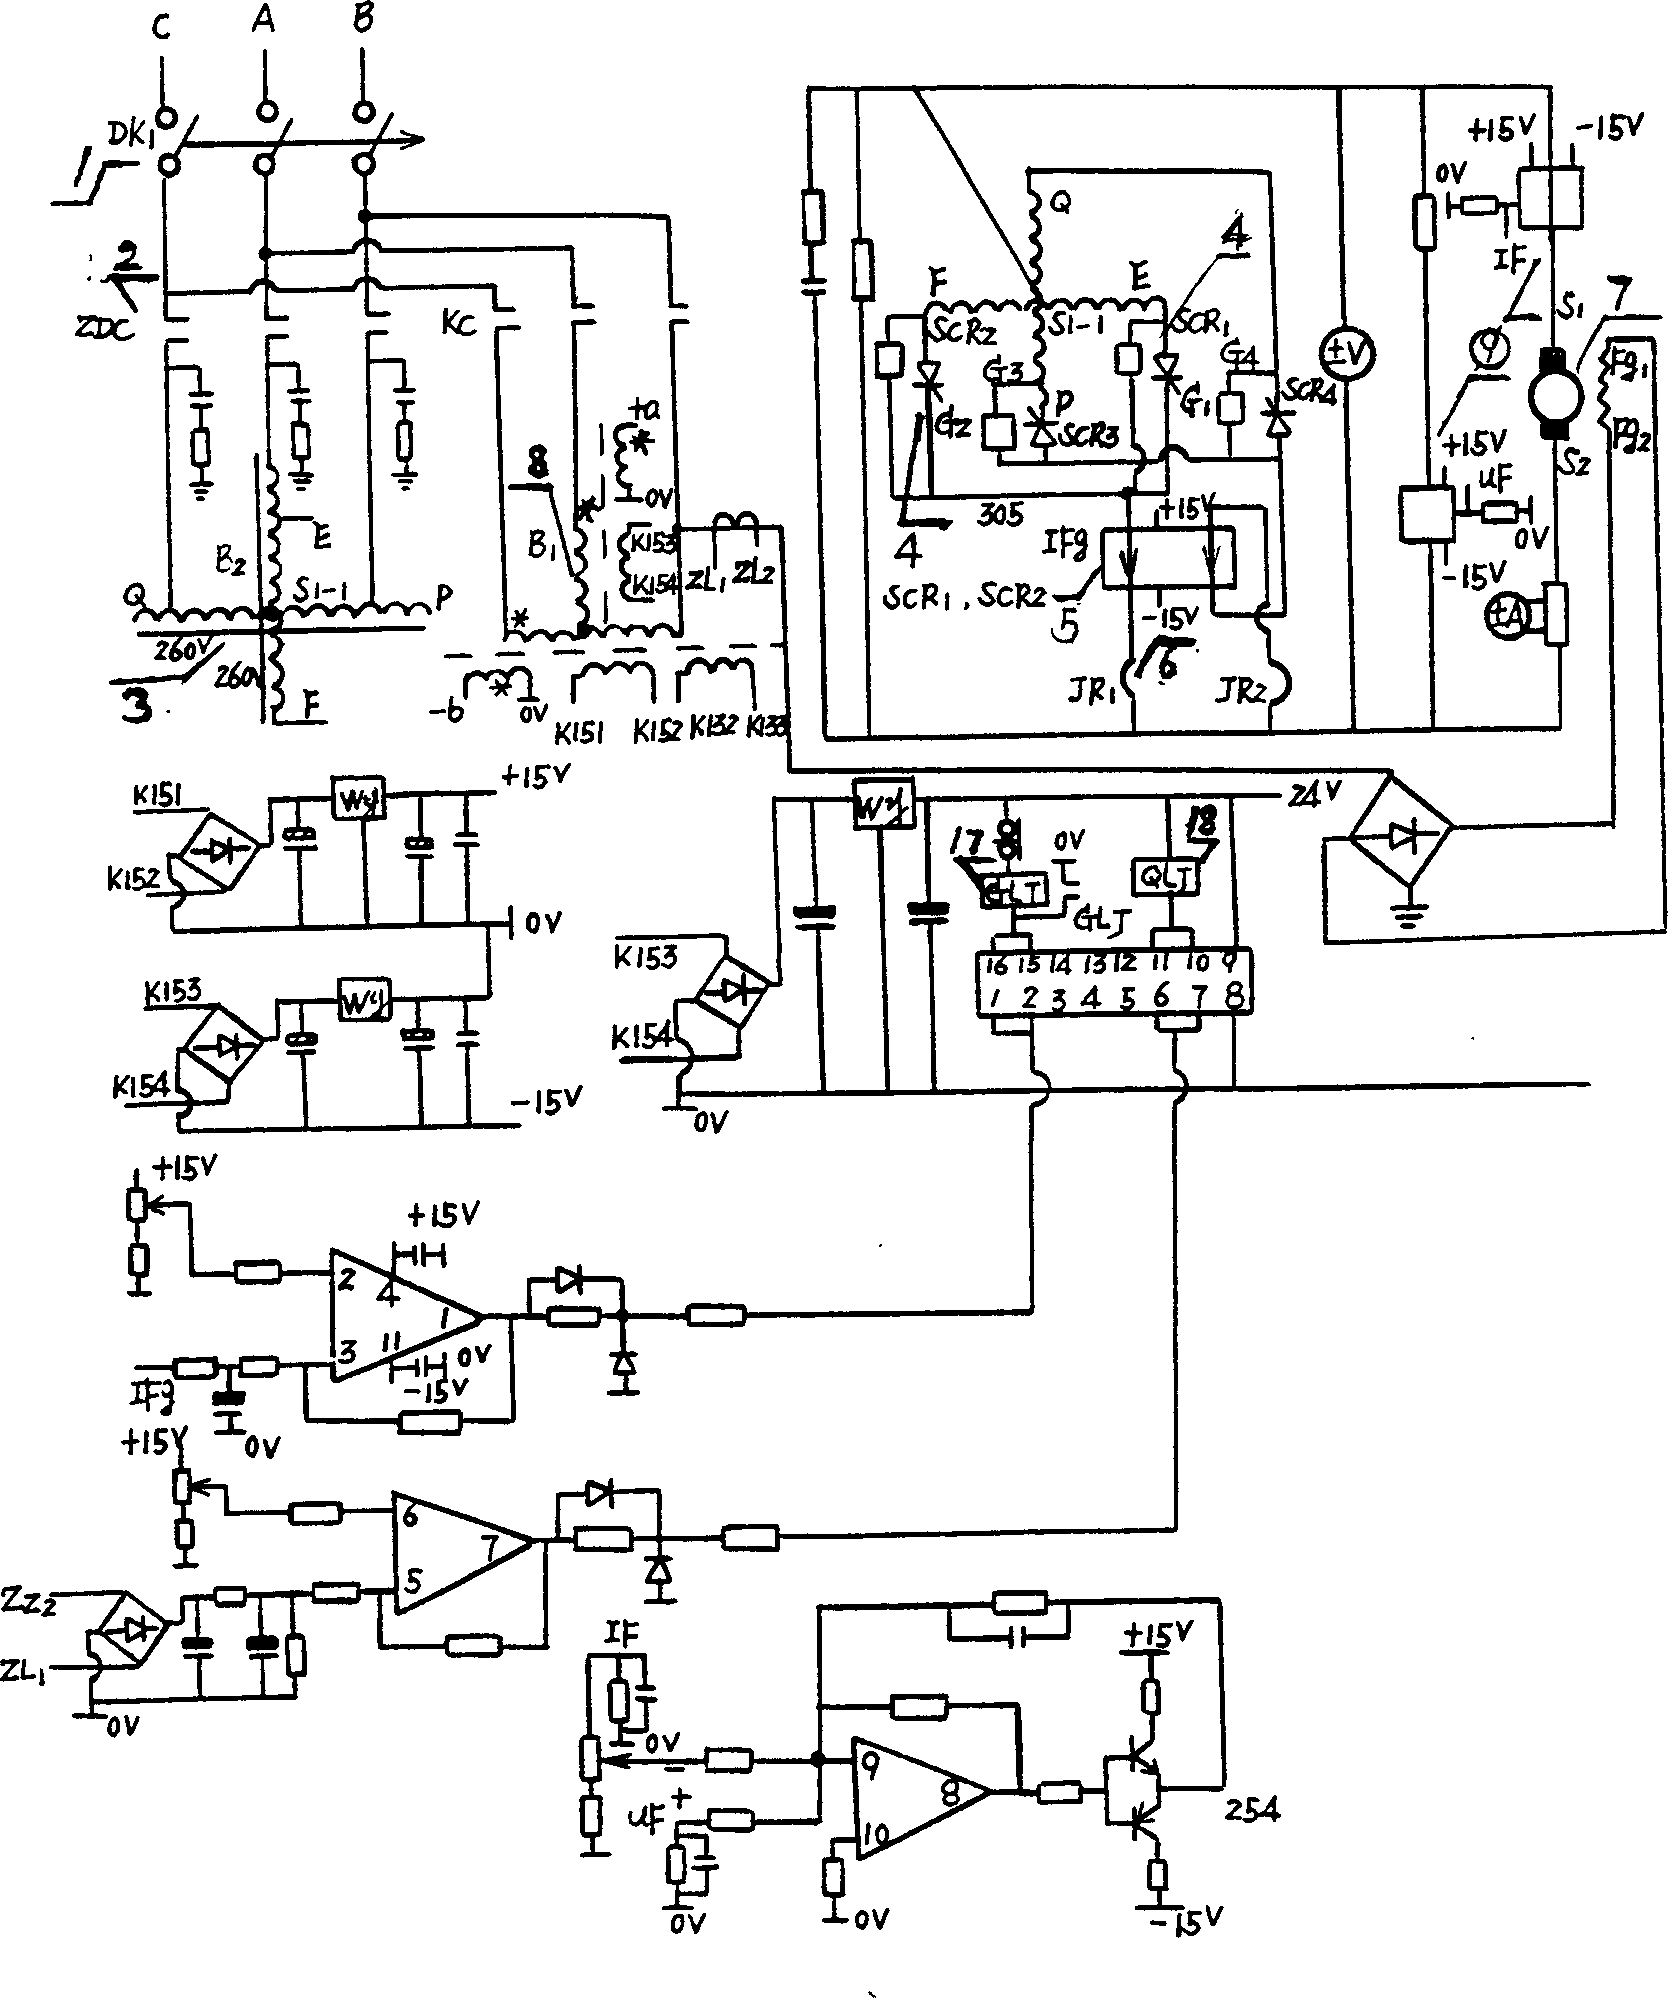 Electroslag furnace control system